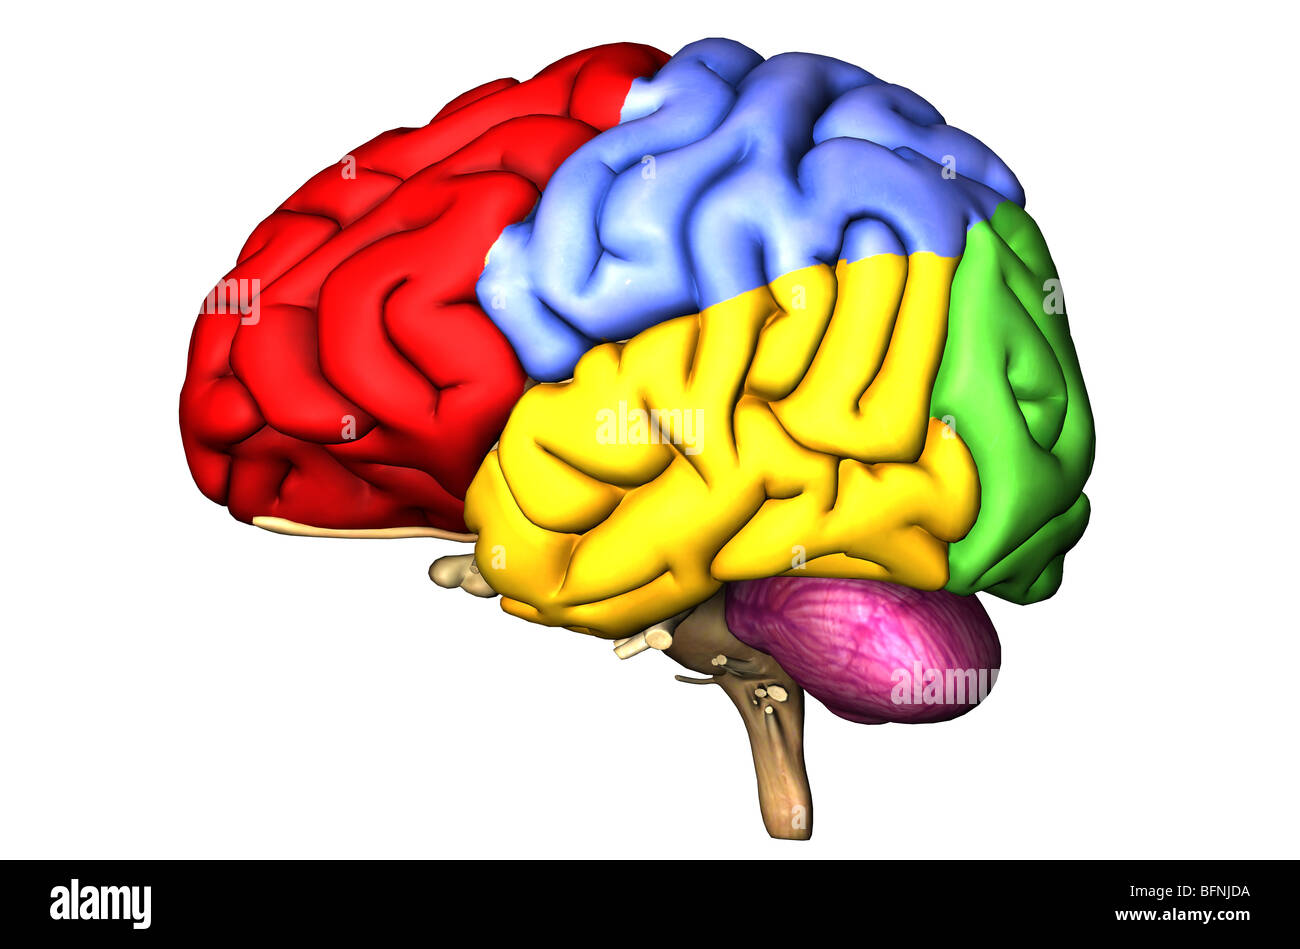 Illustrazione del cervello umano che mostra i lobi cerebrale e nel cervelletto nei colori Foto Stock